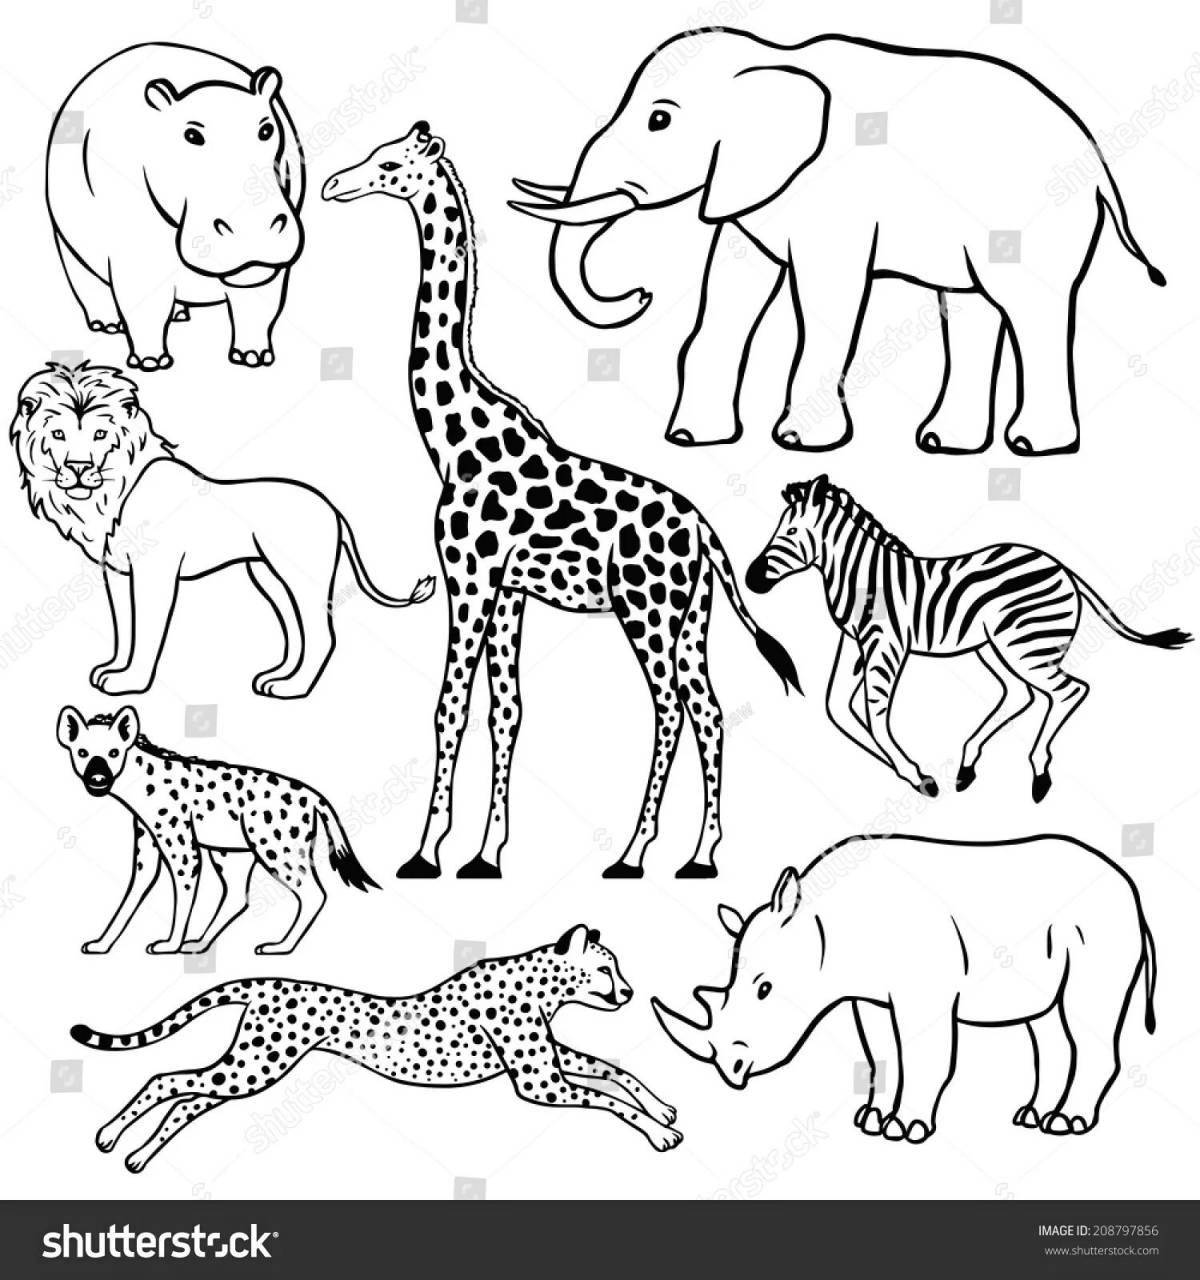 Потрясающие раскраски африканских животных для детей 5-7 лет